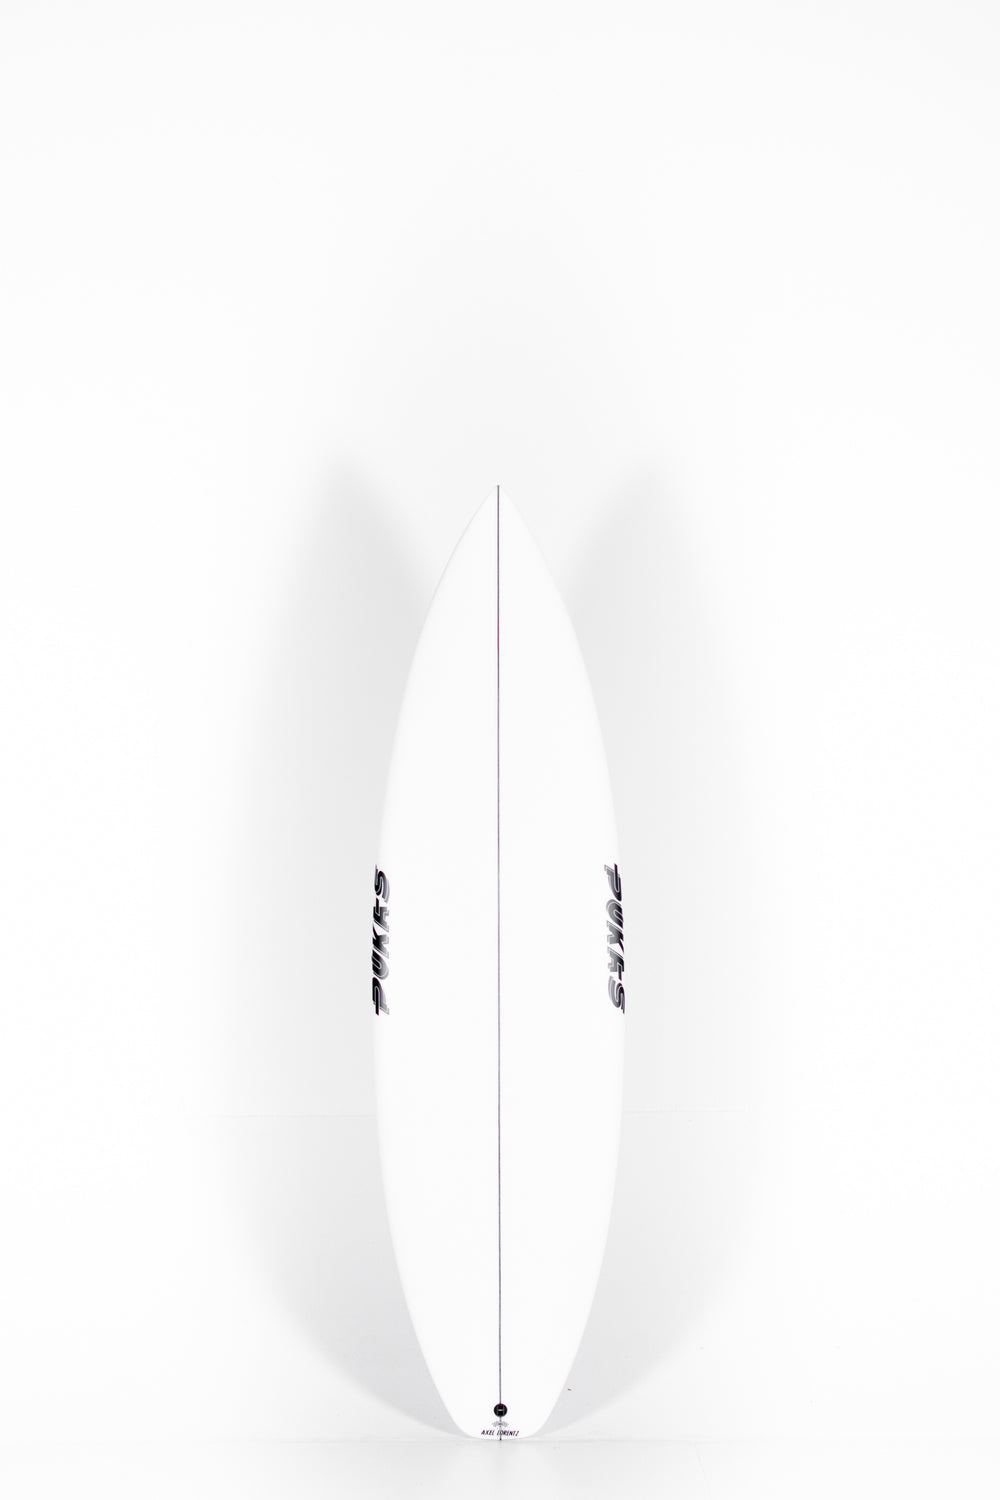 Pukas Surf Shop - Pukas Surfboard - DARKER by Axel Lorentz - 6'1